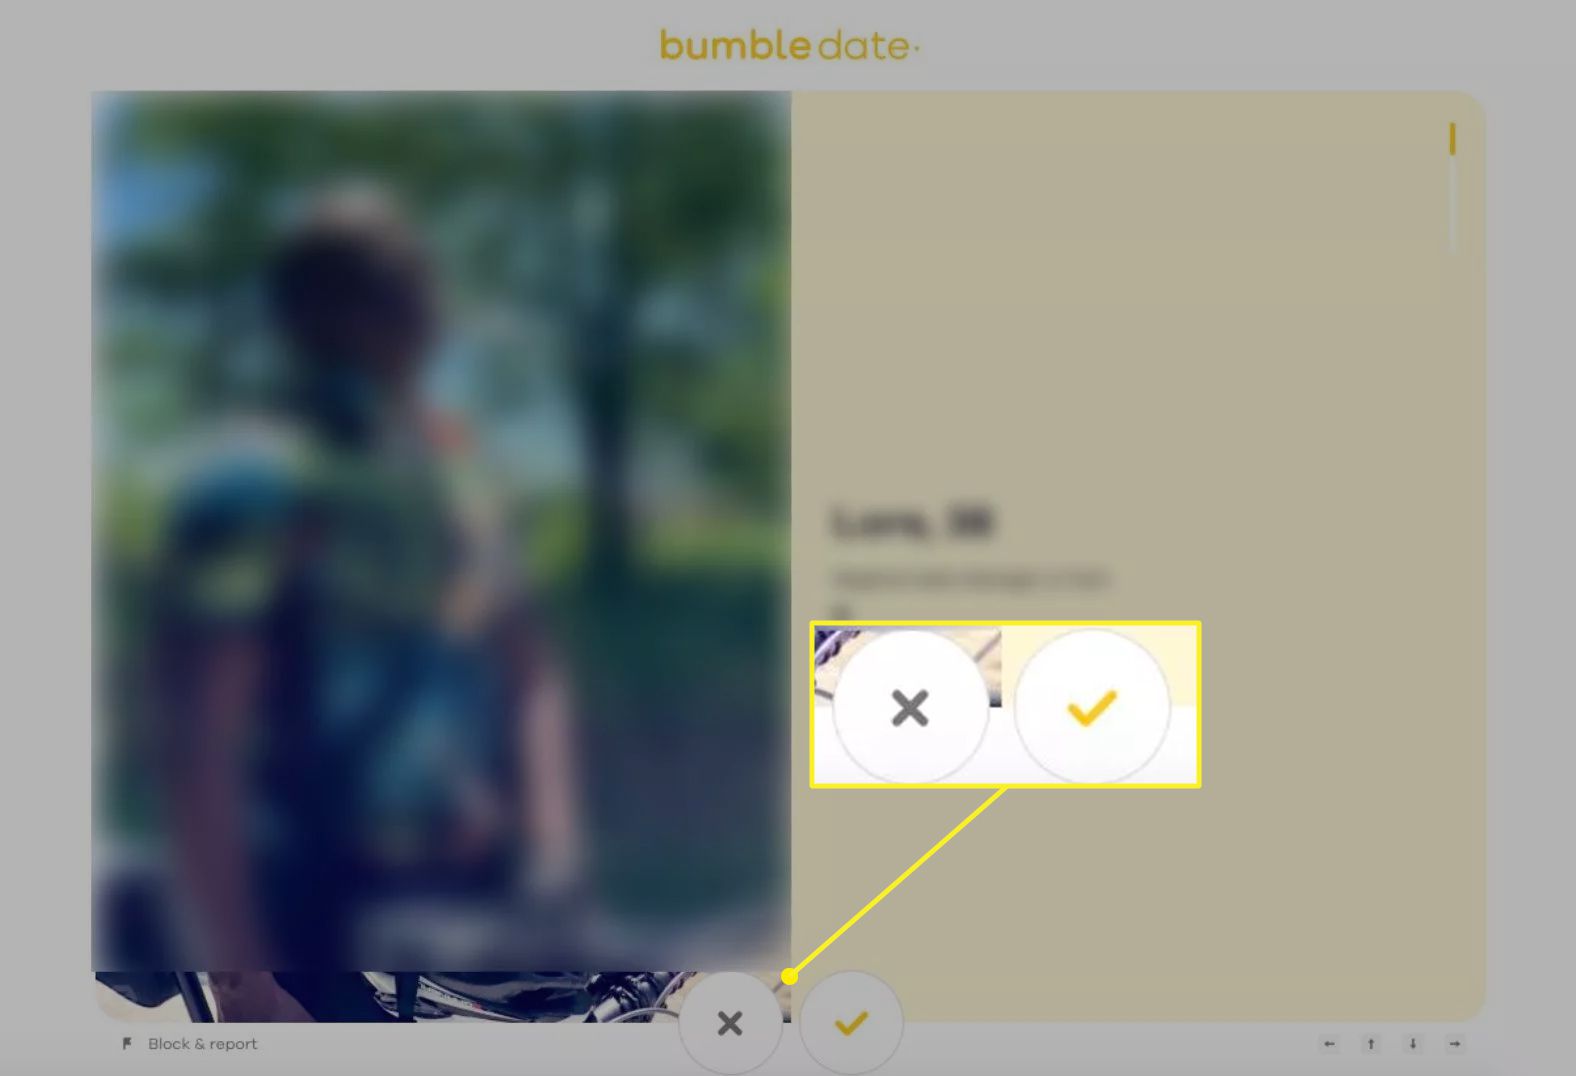 Bumble.com mostrando os botões para passar ou curtir uma partida